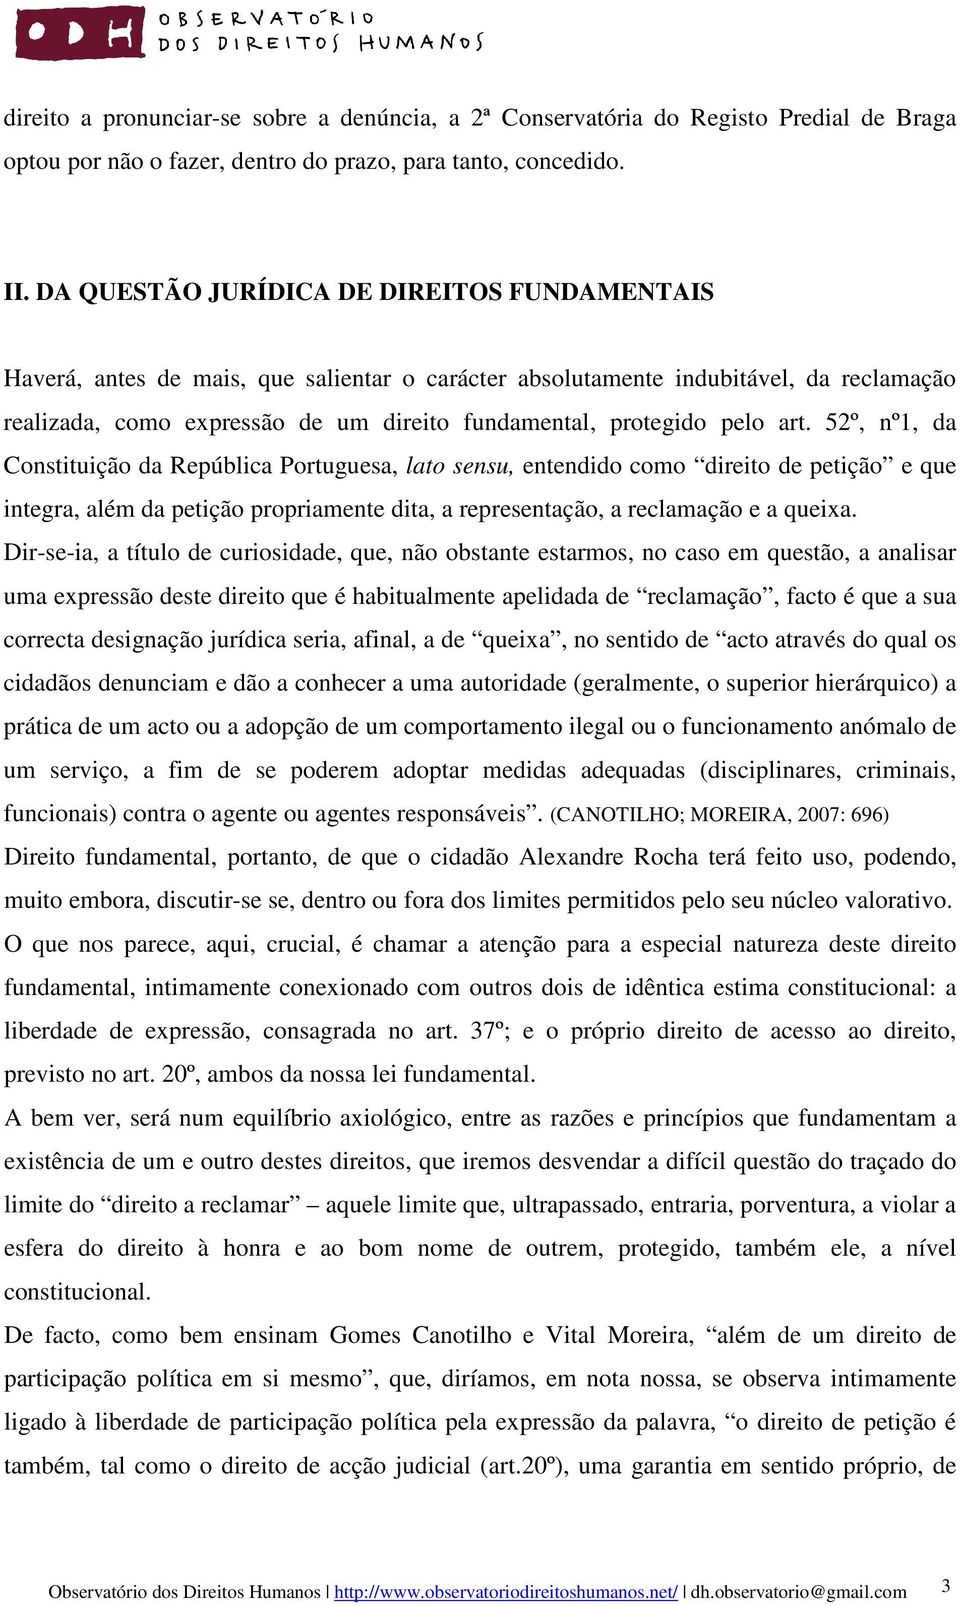 pelo art. 52º, nº1, da Constituição da República Portuguesa, lato sensu, entendido como direito de petição e que integra, além da petição propriamente dita, a representação, a reclamação e a queixa.